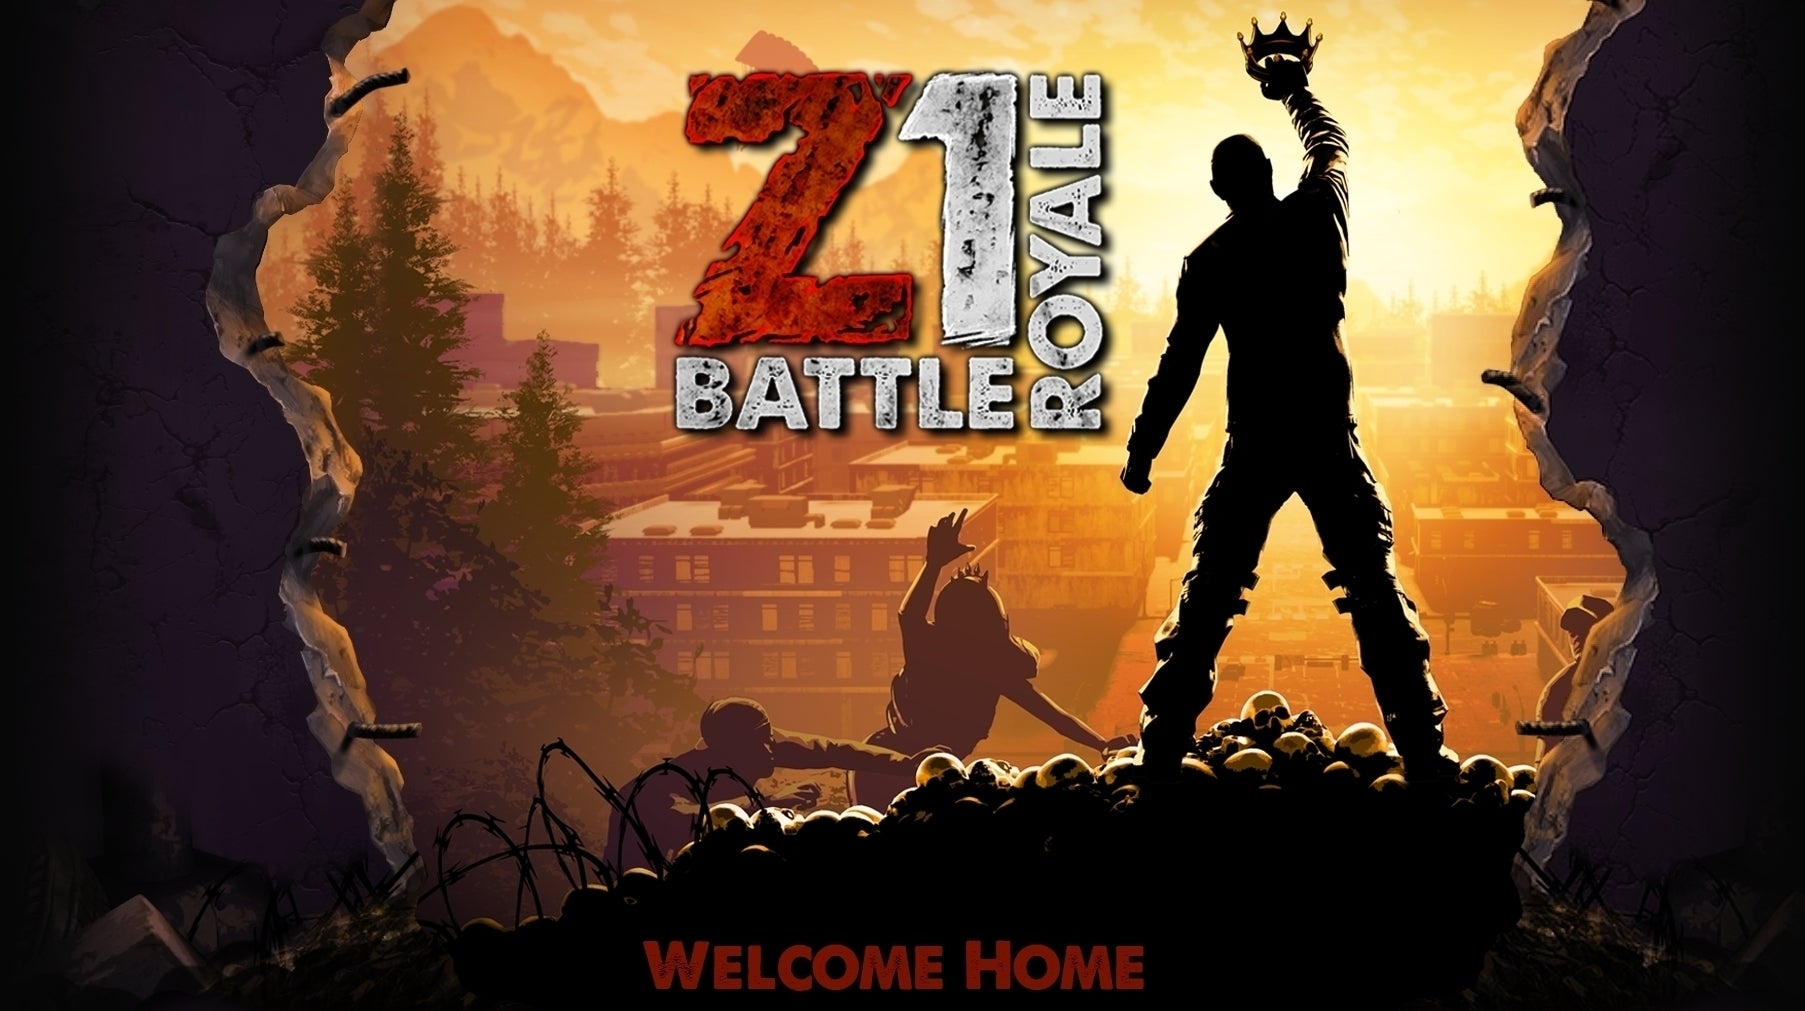 Imagen para NantG Mobile devuelve el desarrollo de Z1 Battle Royale a Daybreak Games